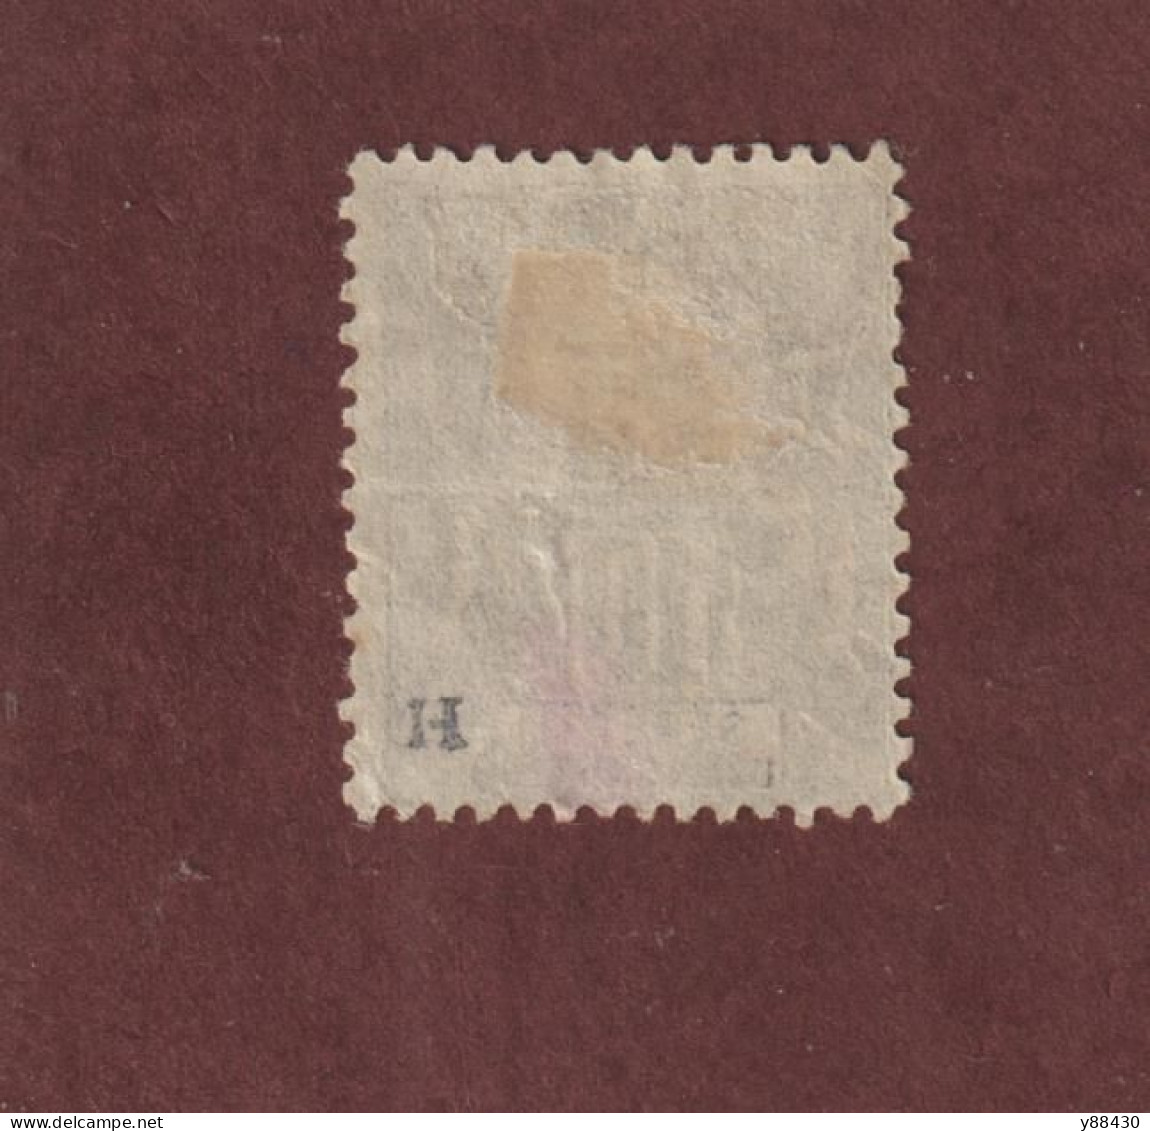 SÉNÉGAL - 12 De 1892/1893  - Oblitéré - Type Colonies - 10c. Noir Sur Lilas  - 2 Scan - Oblitérés